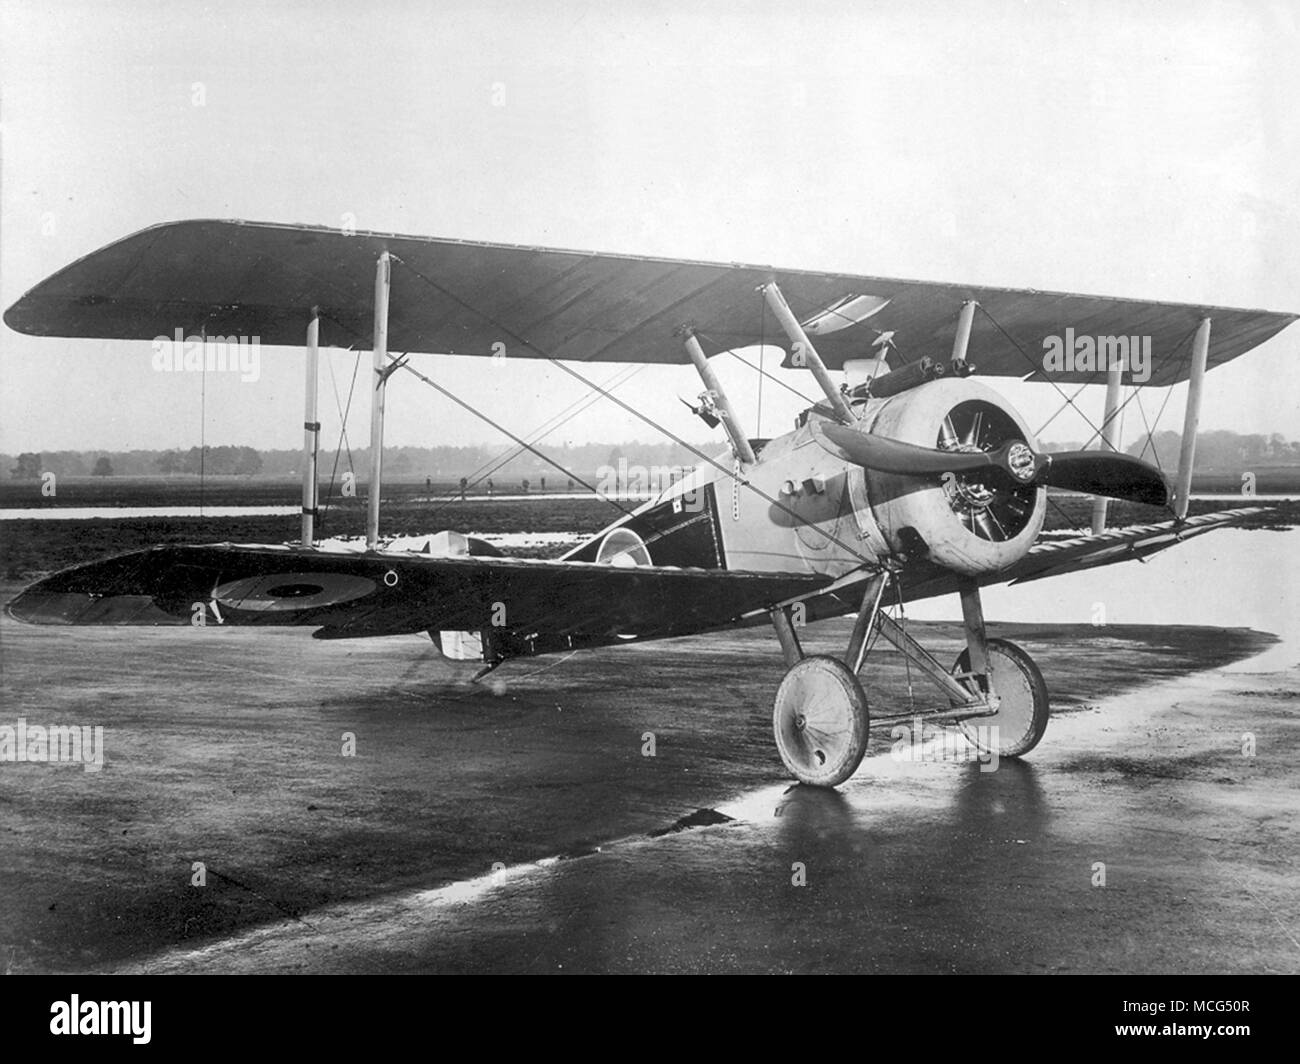 Sopwith Camel est une première guerre mondiale, un avion de chasse biplan introduit sur le front occidental en 1917 Banque D'Images